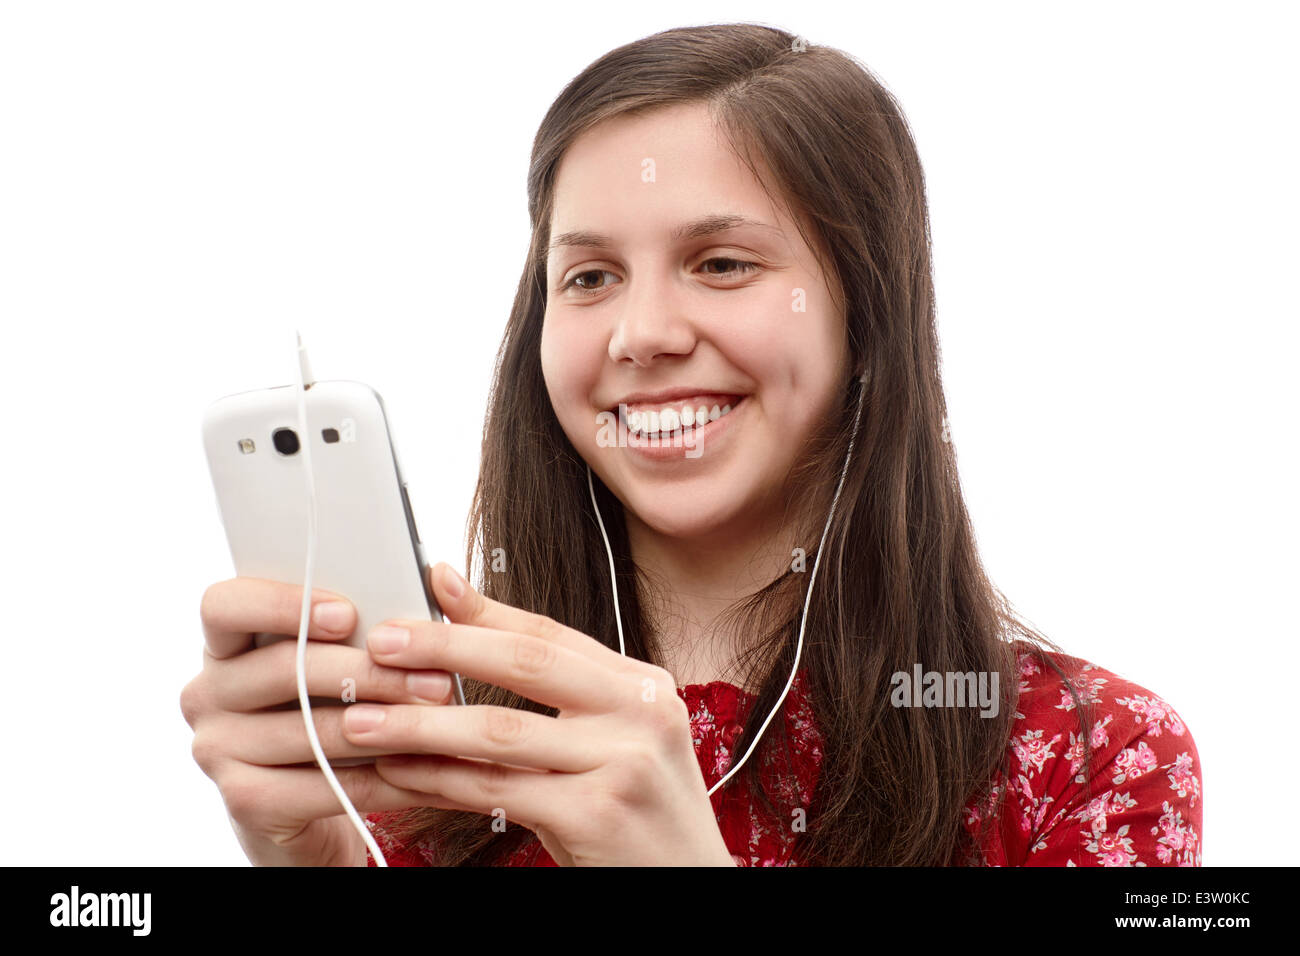 Jeune femme recherchant quelque chose sur un téléphone intelligent Banque D'Images